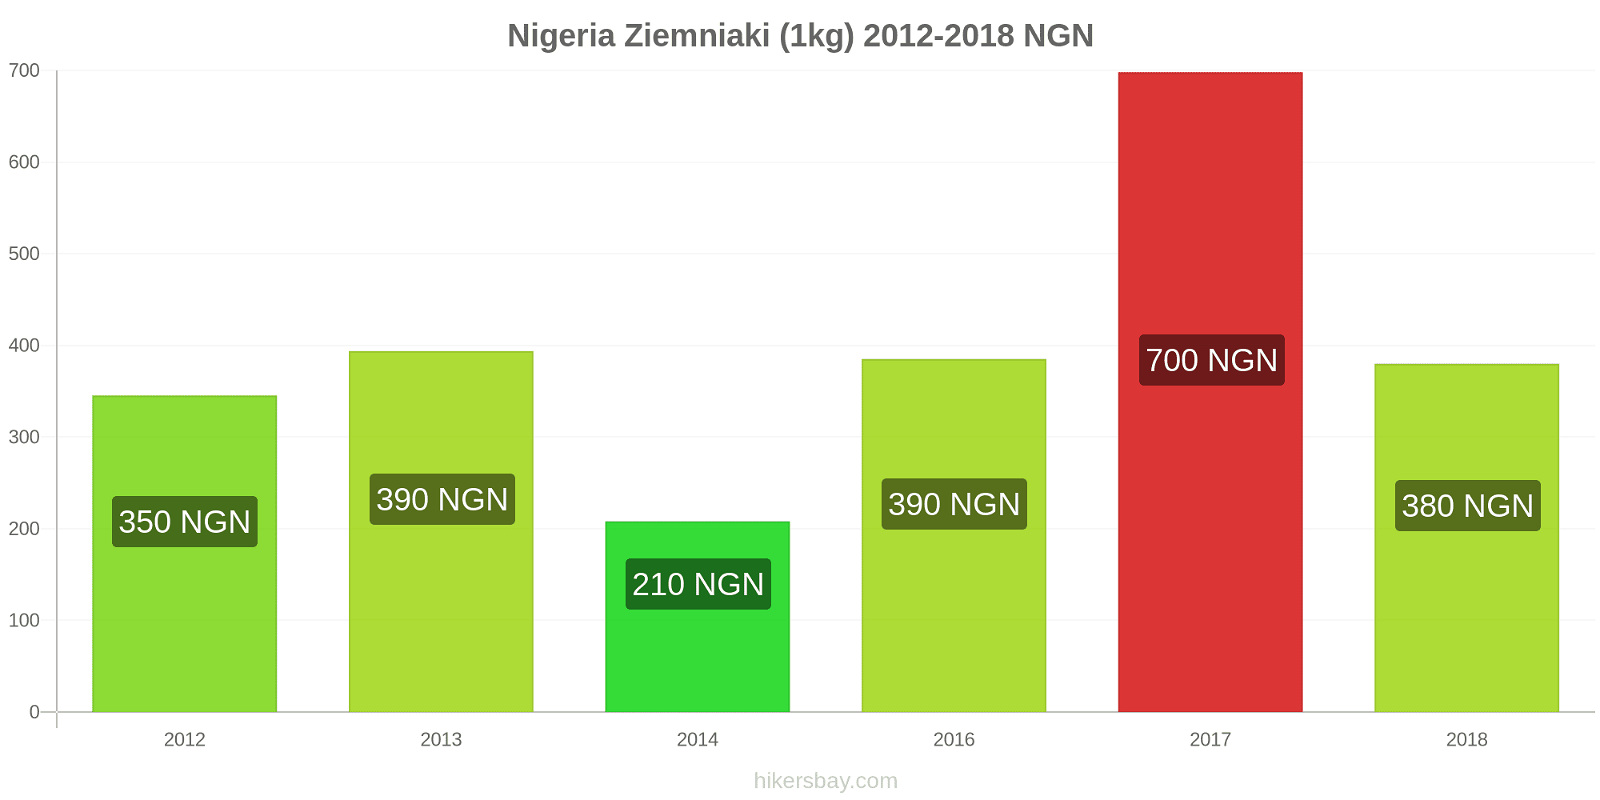 Nigeria zmiany cen Ziemniaki (1kg) hikersbay.com